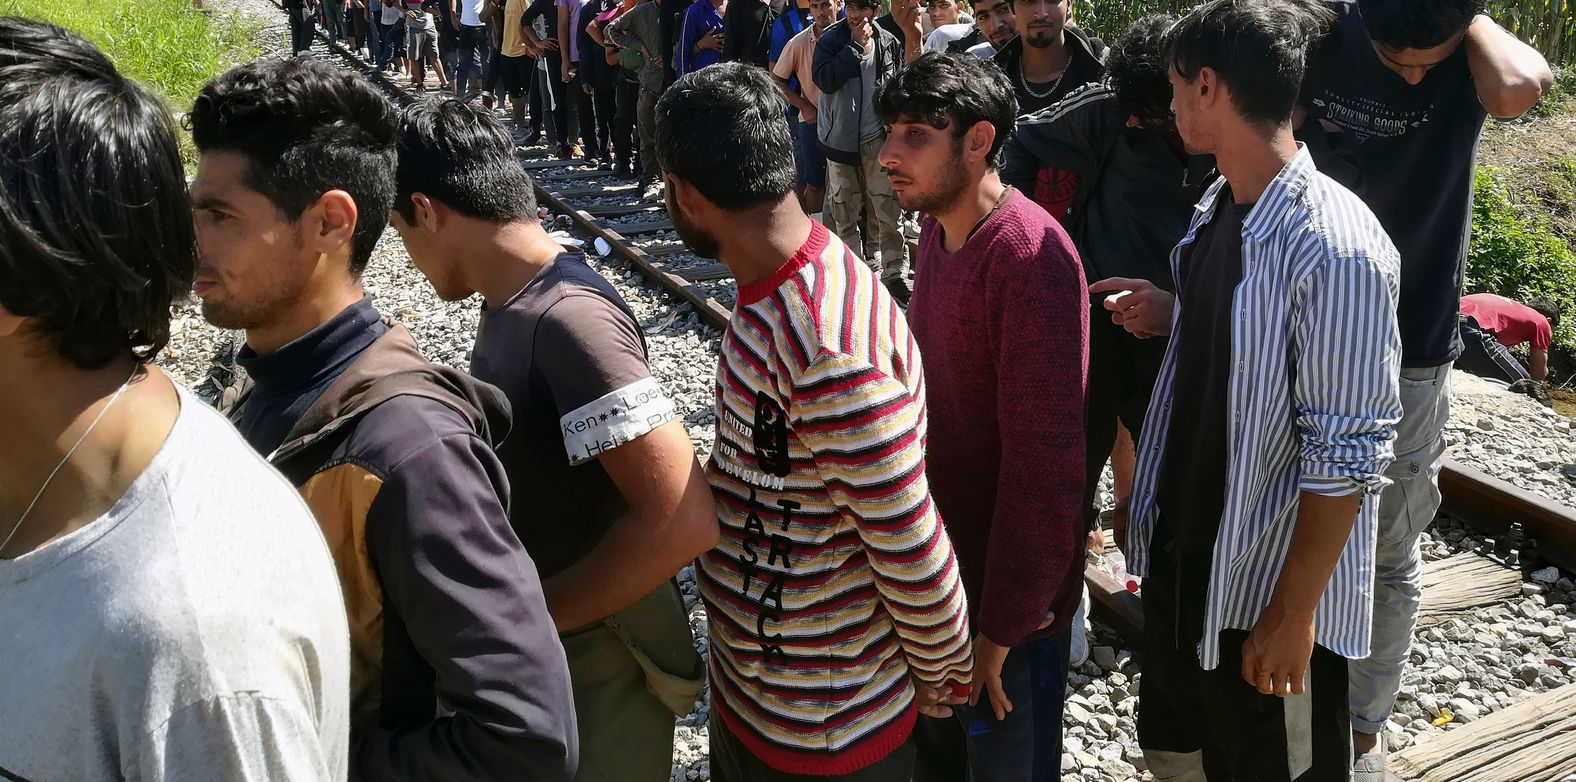 Откриха 23 незаконни мигранти, натъпкани в бус край Пловдив. Снимката е илюстратавна